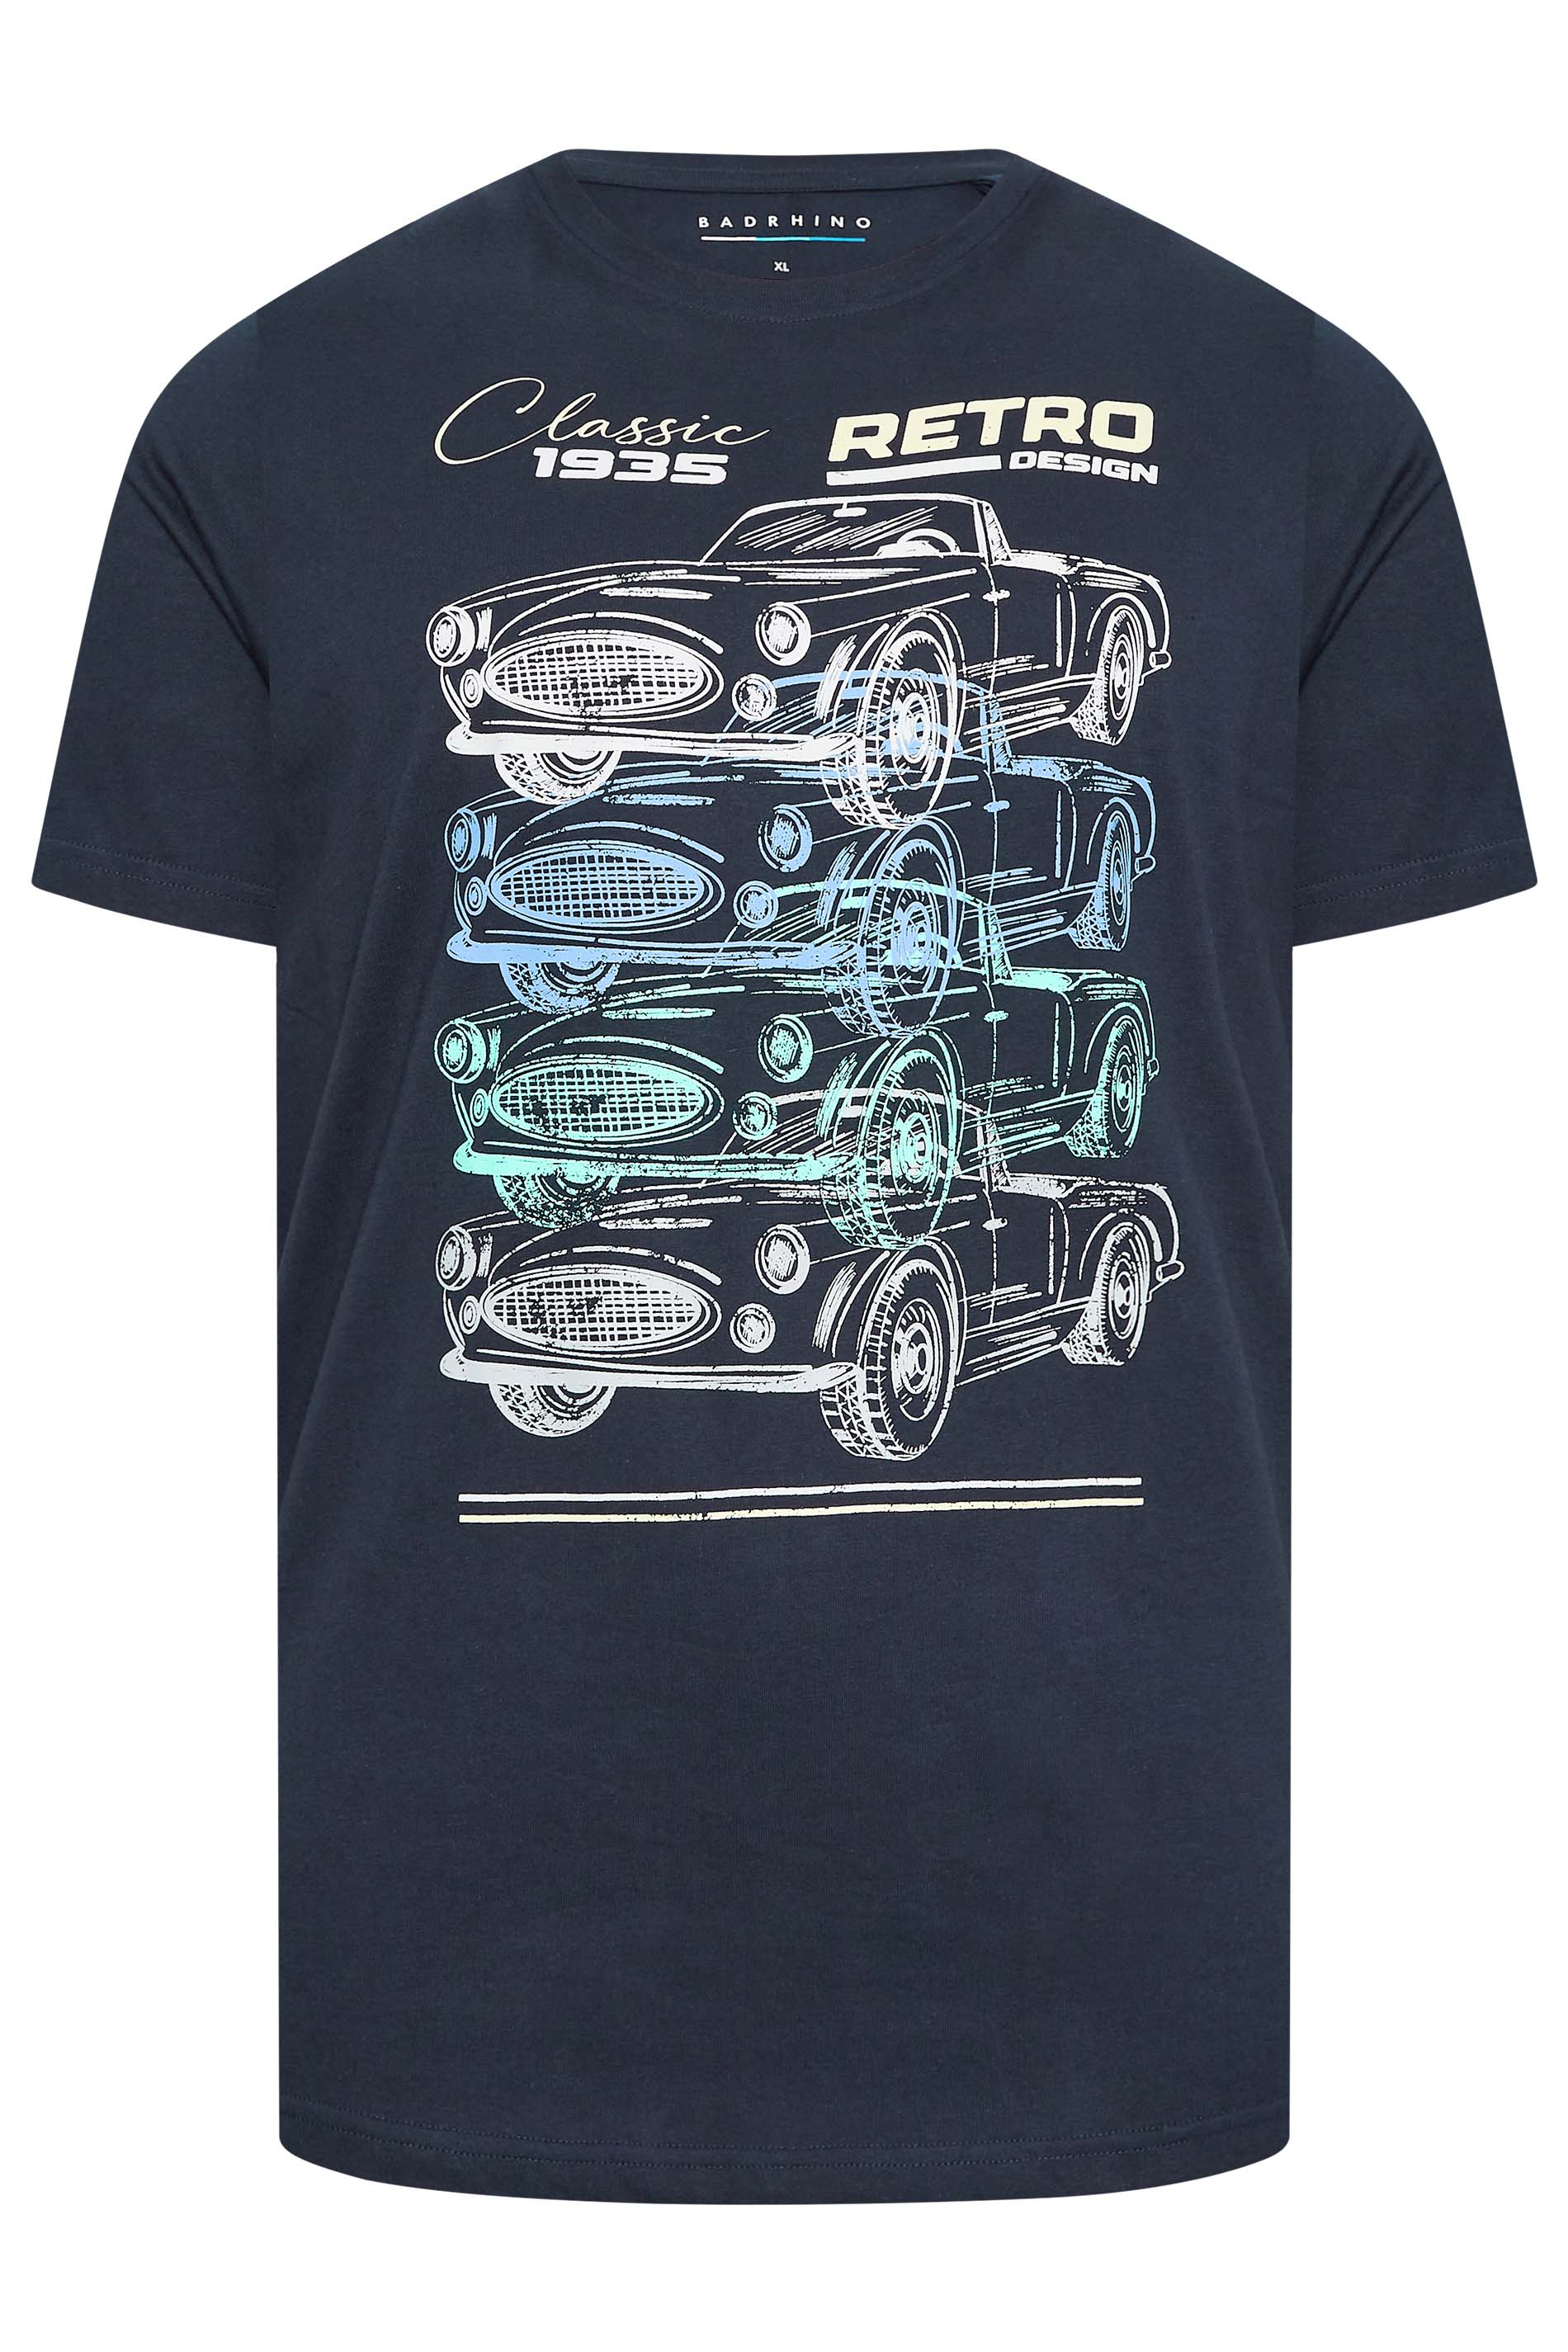 BadRhino Big & Tall Blue Retro Car Print T-Shirt | BadRhino 3